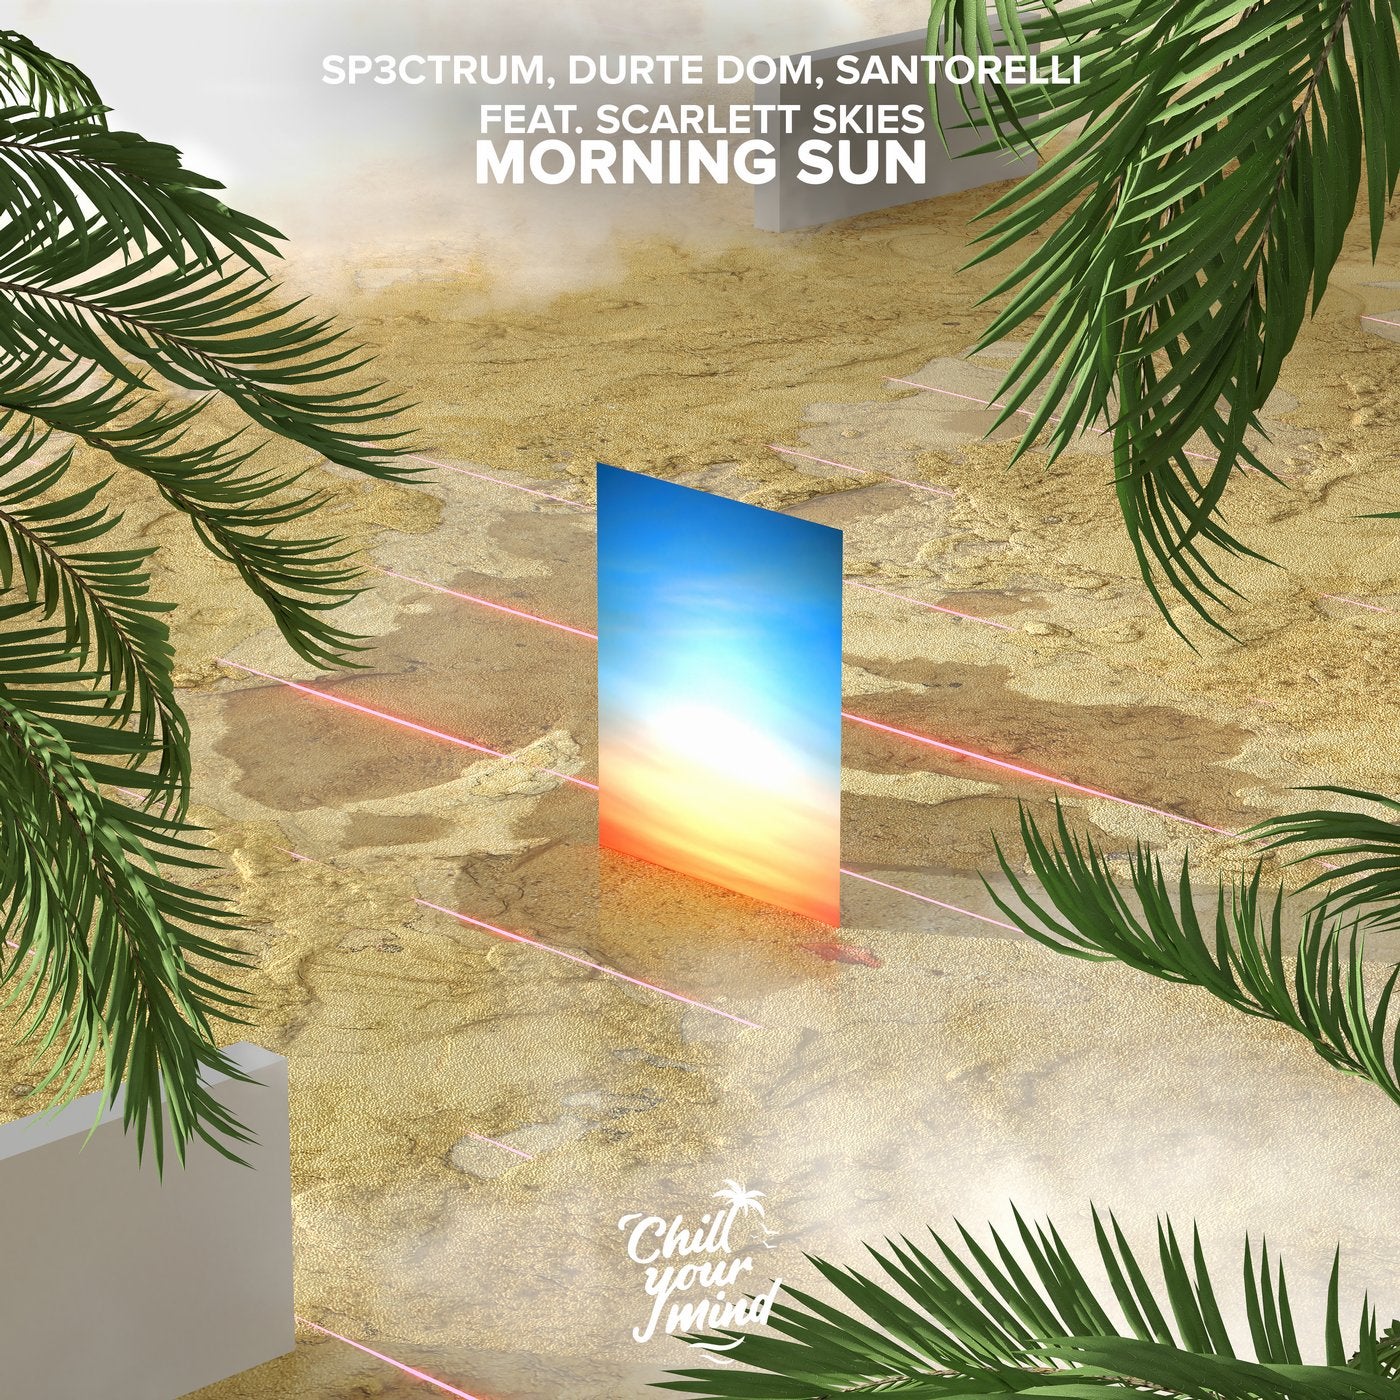 Morning Sun (feat. Scarlett Skies)